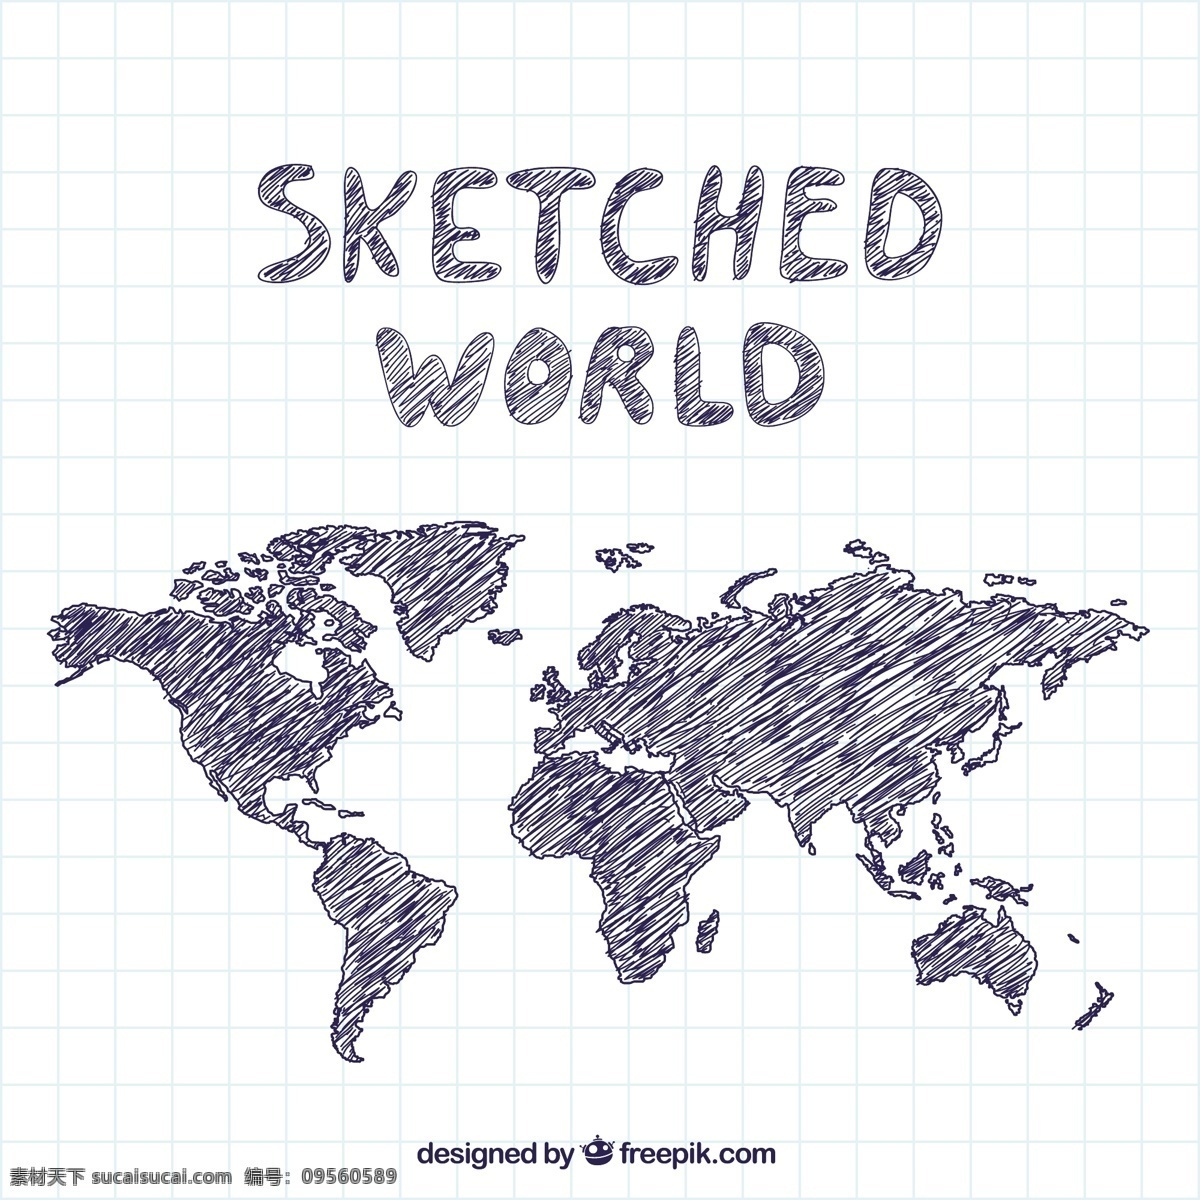 世界地图模板 地图 世界 地球 国际 世界地图 手绘 在世界范围内 草绘